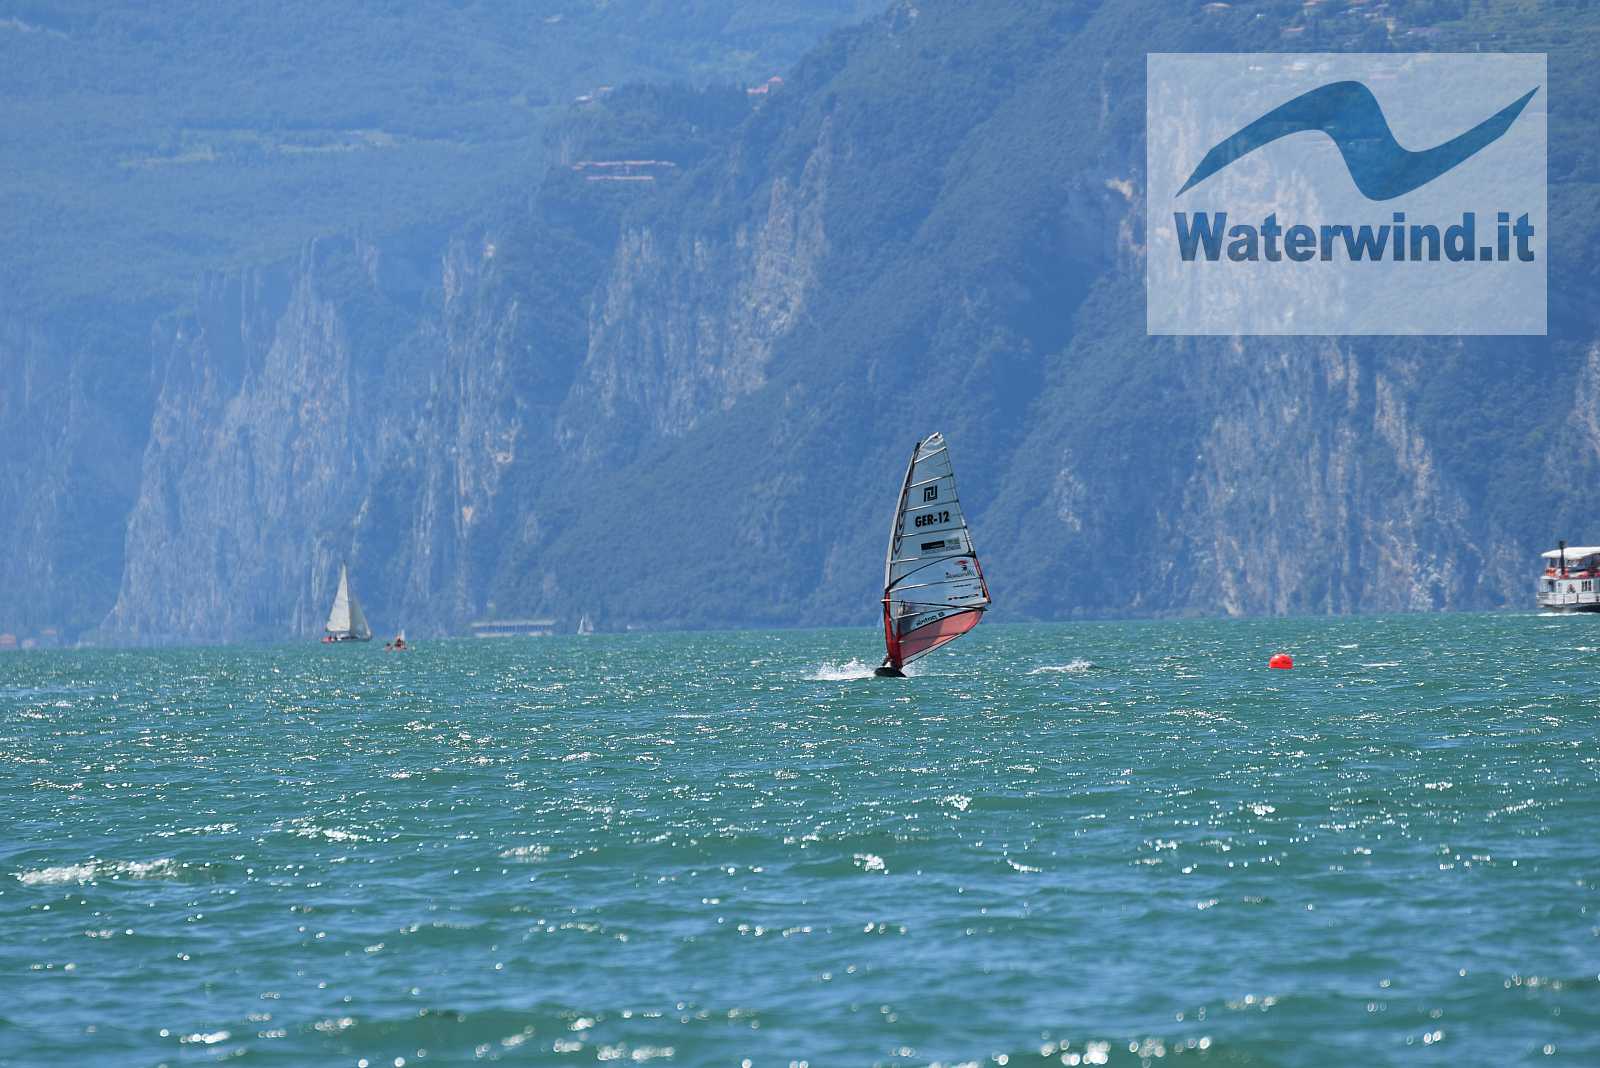 Lake Garda, 15 August 2018